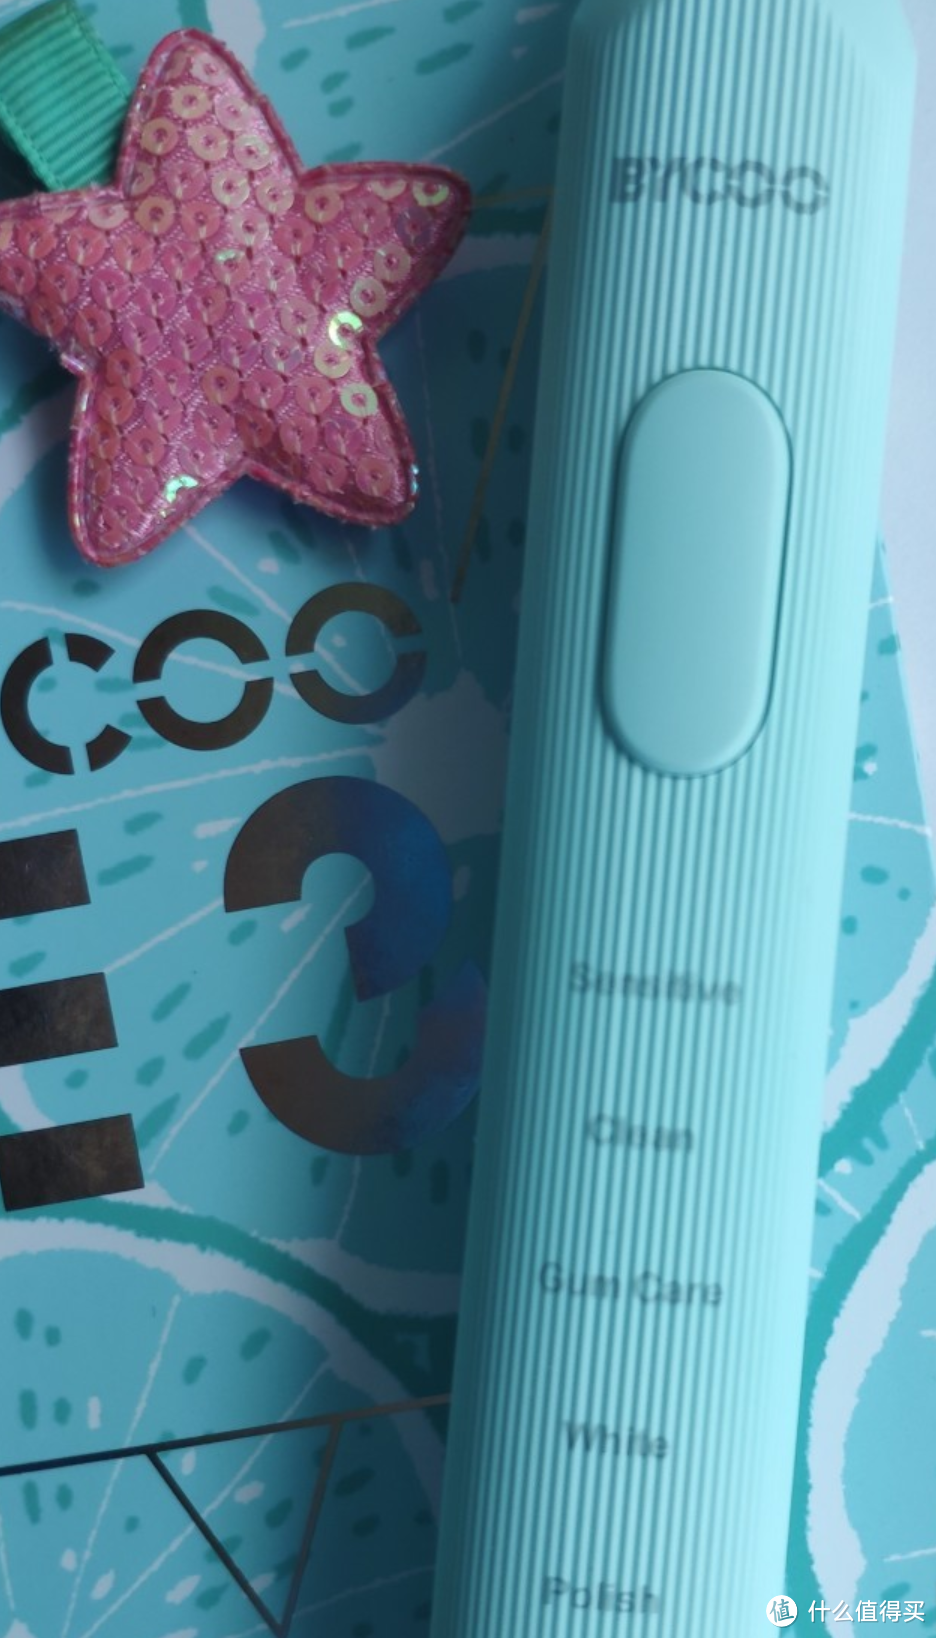 年度性价比首选  BYCOO深度清洁电动牙刷E3测评